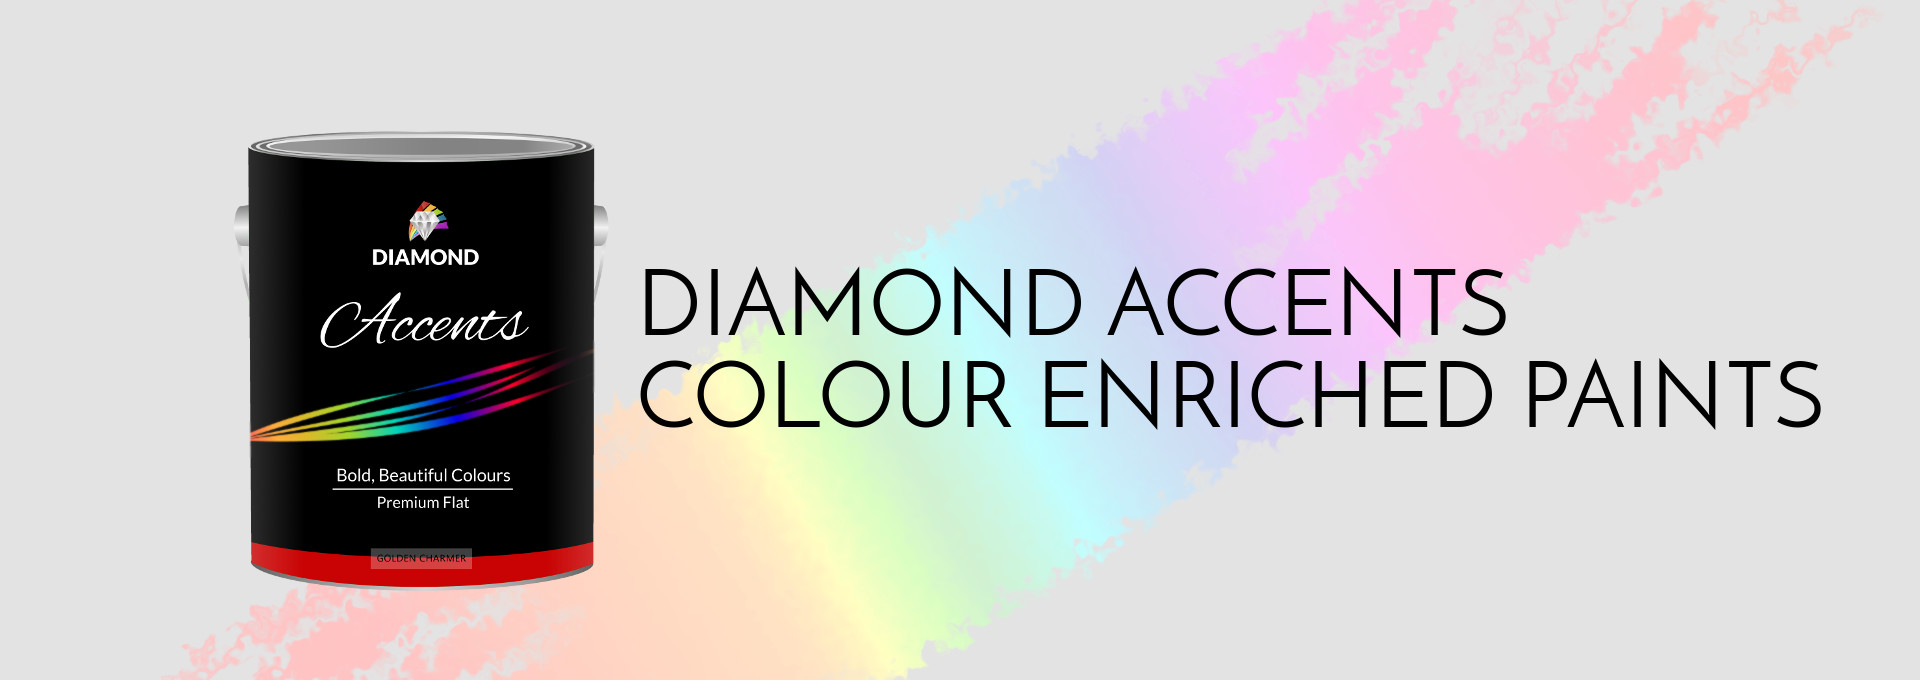 Diamond Accents Enriched Colours